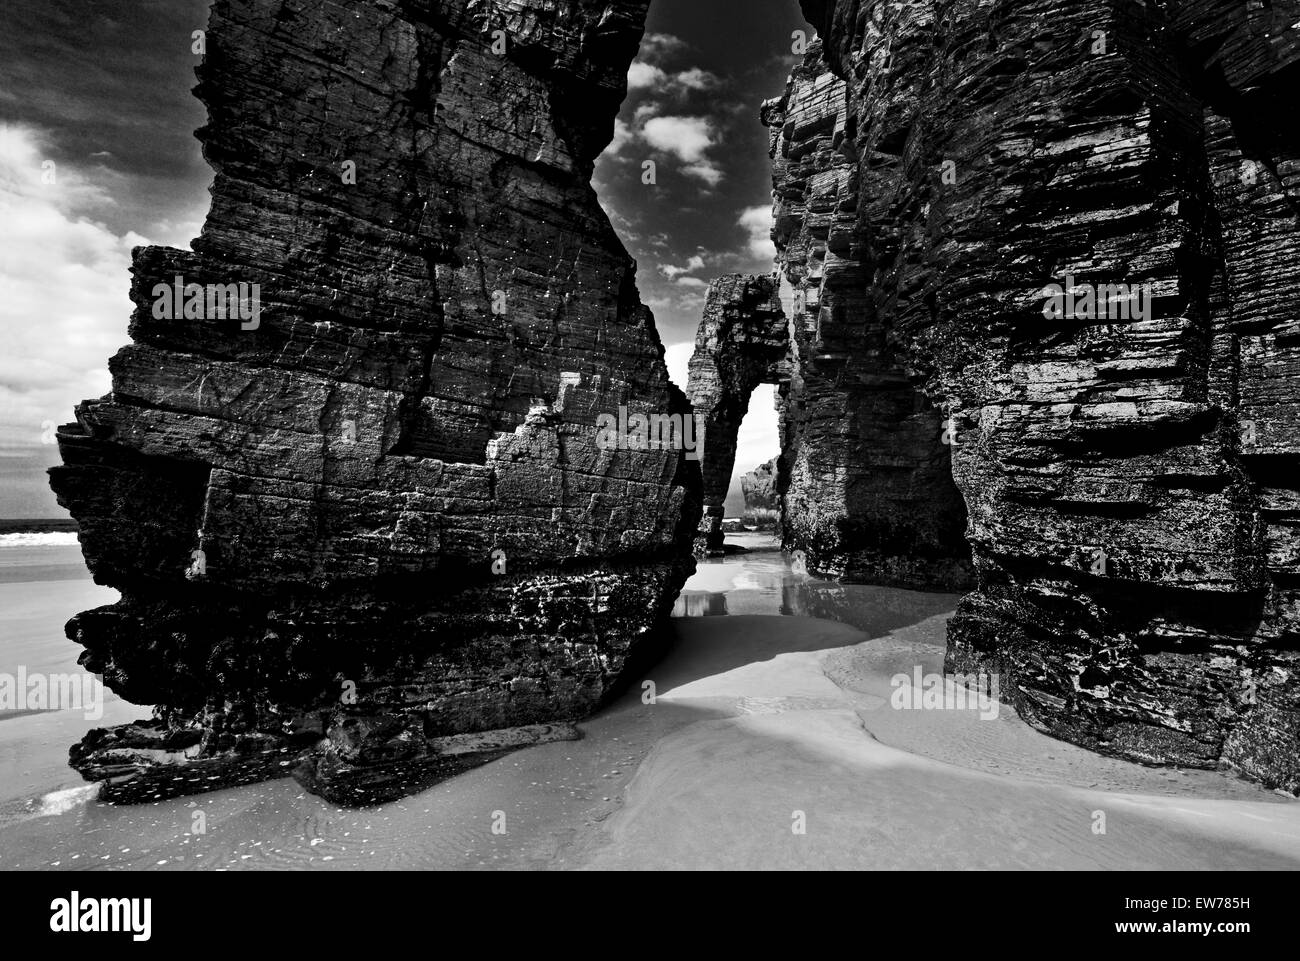 España, Galicia: impresionante arco en la Catedral de roca (playa Praia como Catedrais) en la versión en blanco y negro Foto de stock